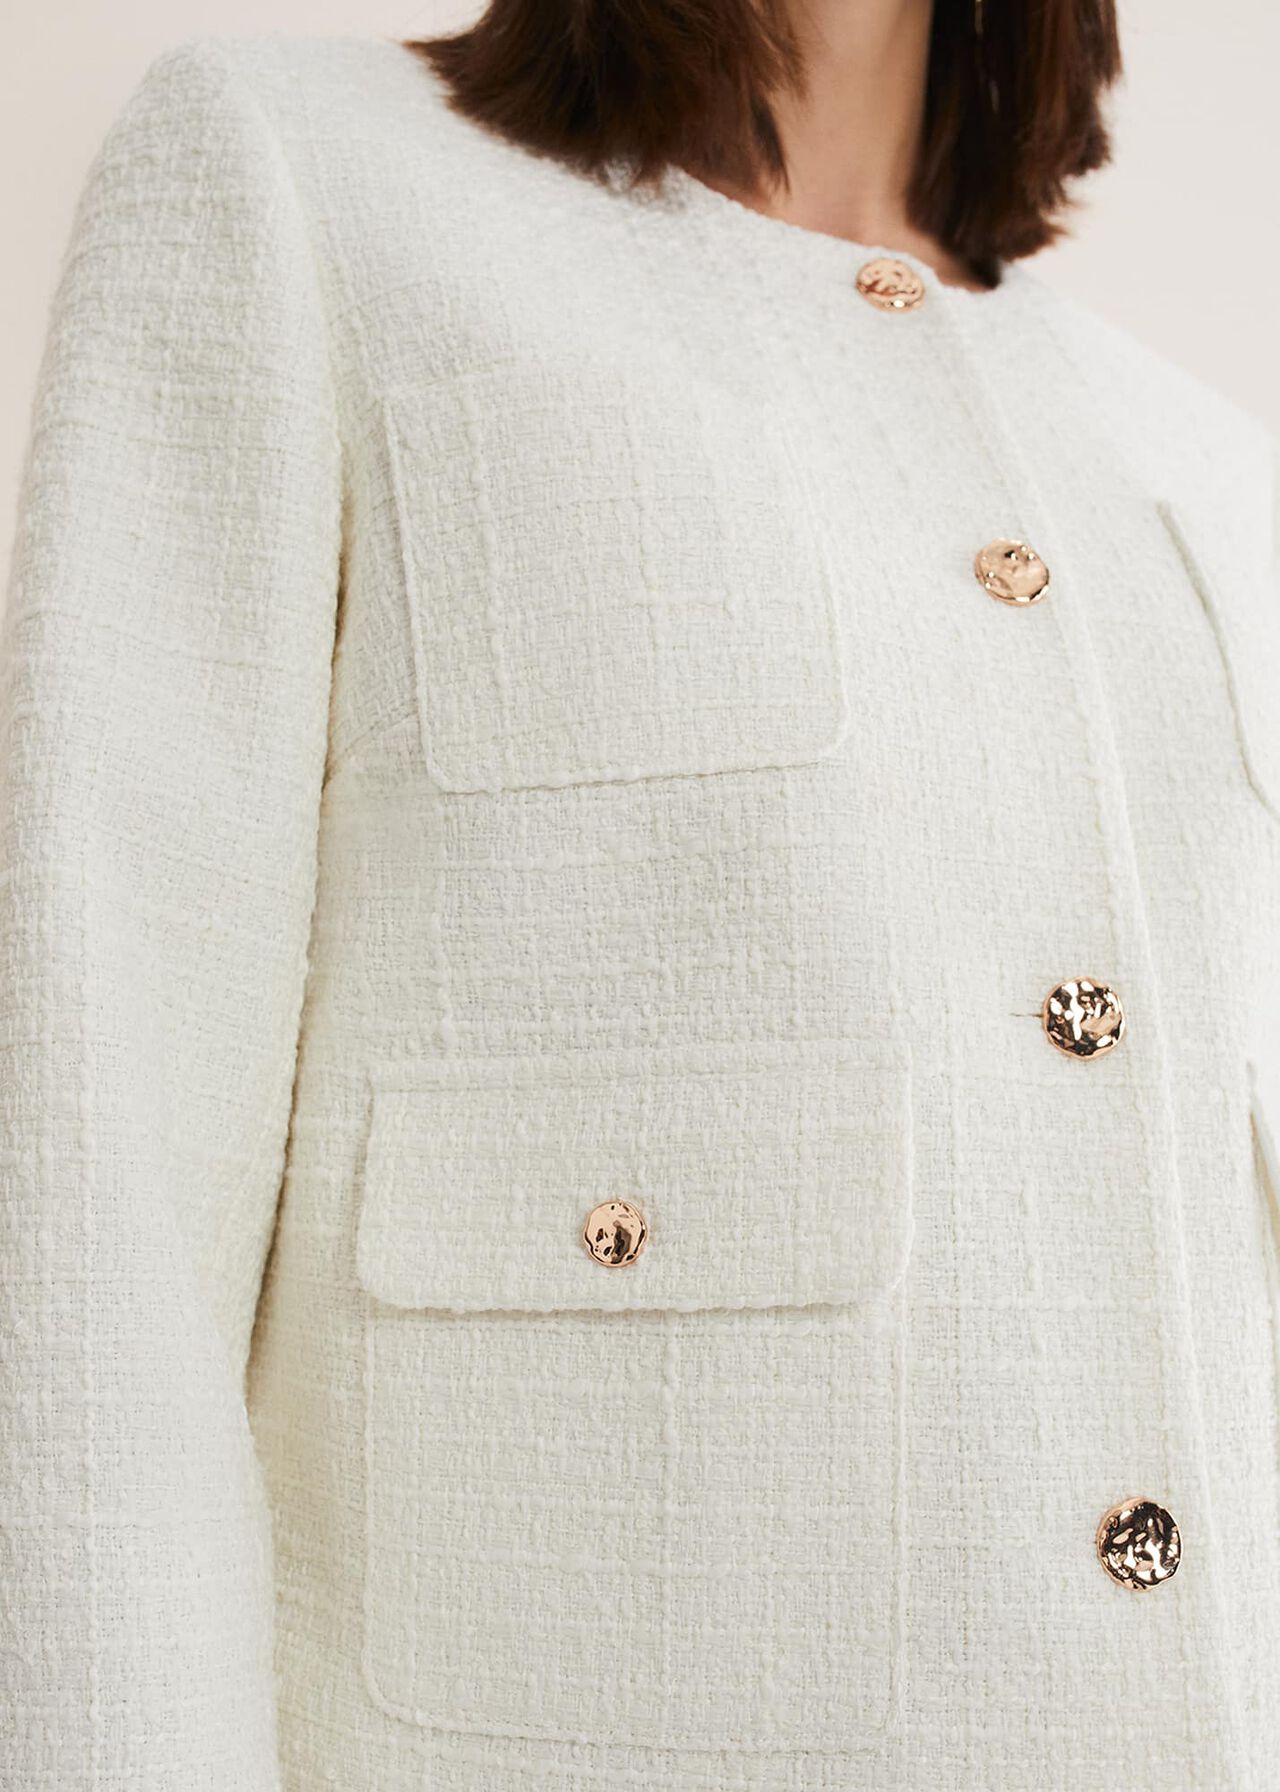 Ripley Tweed Jacket